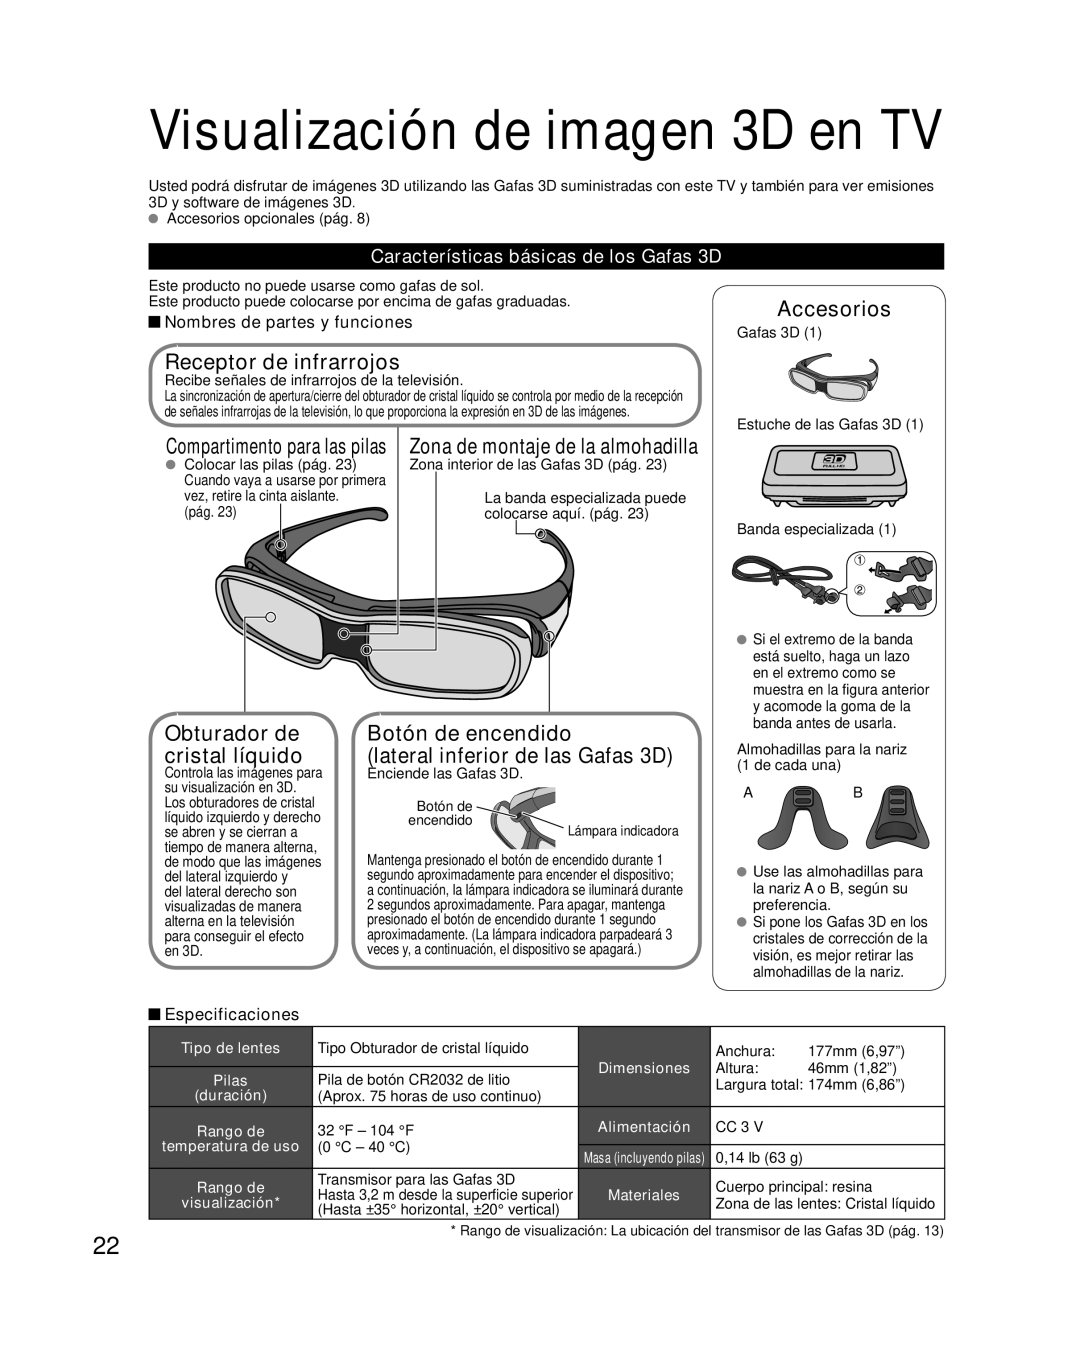 Panasonic TQB2AA0595 Receptor de infrarrojos, Obturador de cristal líquido, Características básicas de los Gafas 3D 